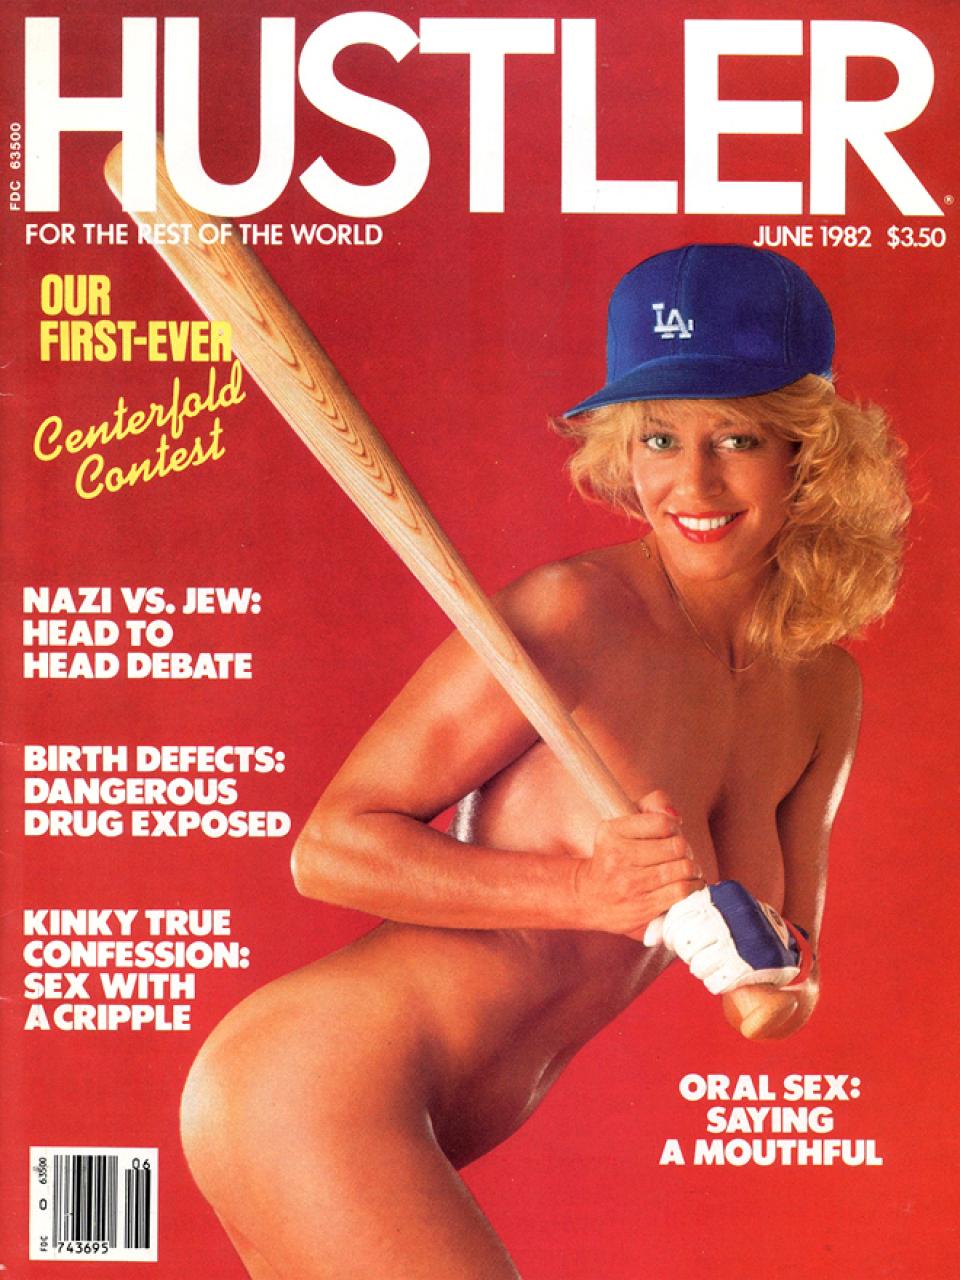 June 1982 - HUSTLER Magazine.